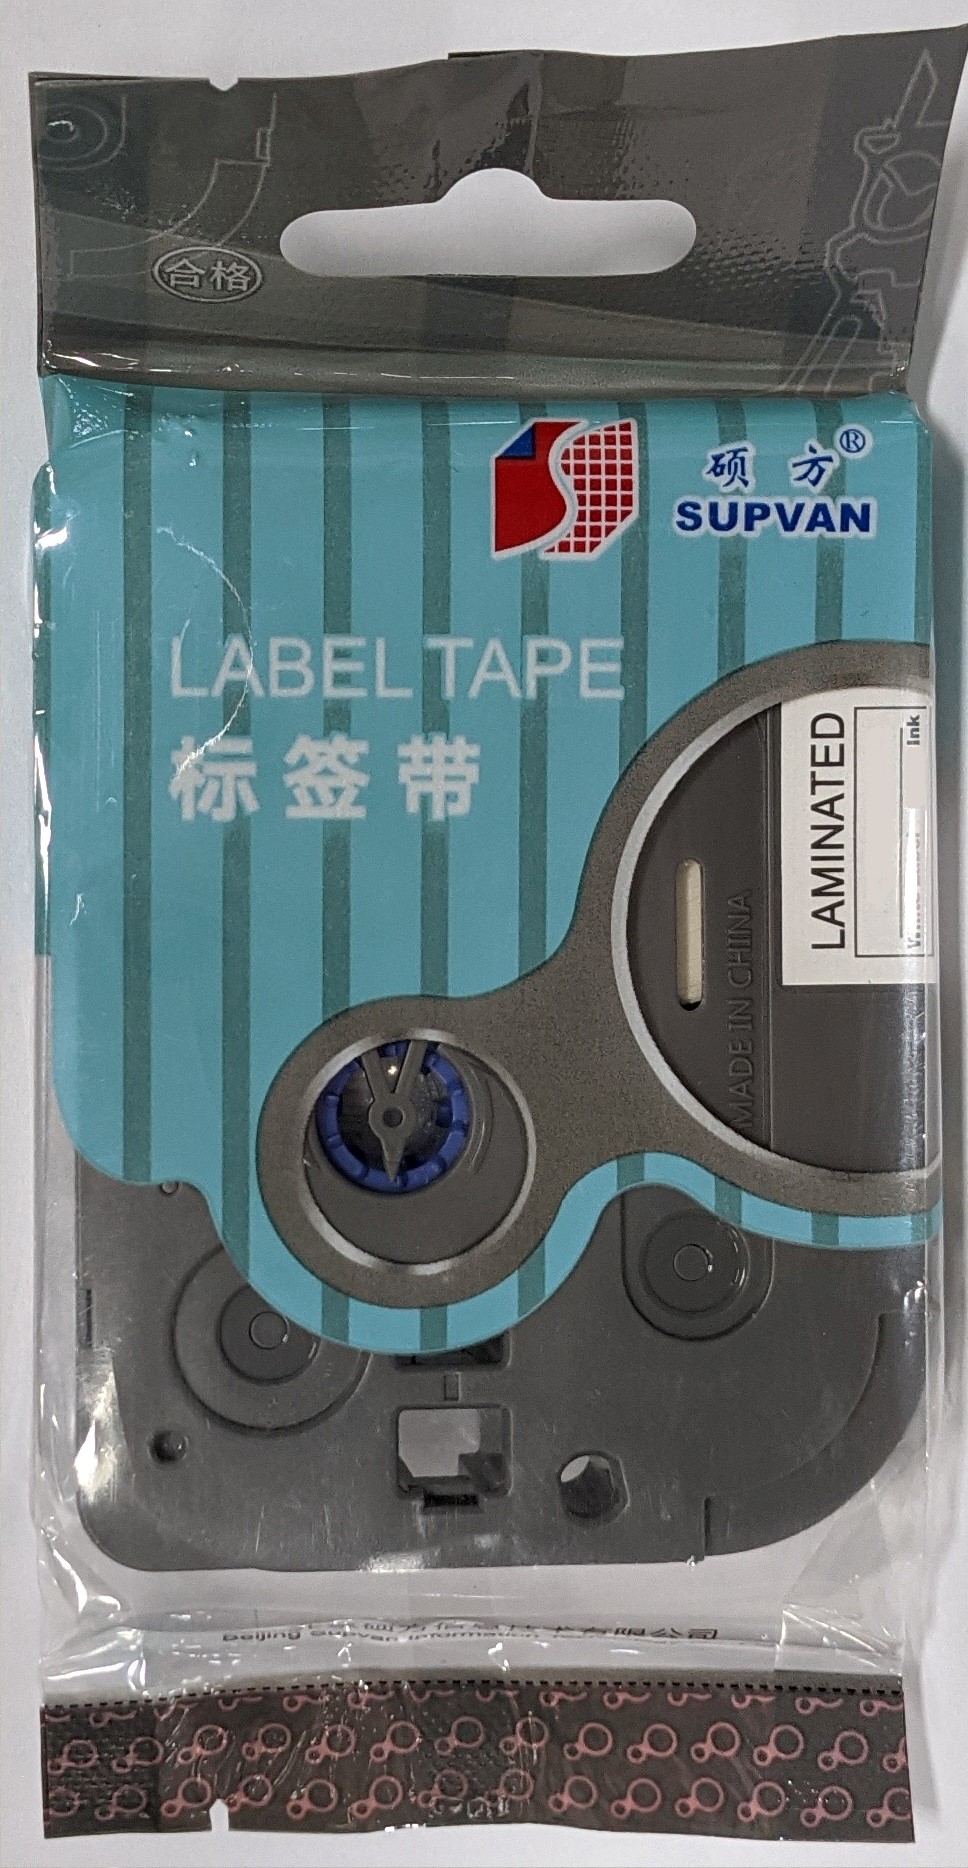 Samolepicí páska Supvan L-P621E, 9mm x 8m, černý tisk / žlutý podklad, silně lepicí